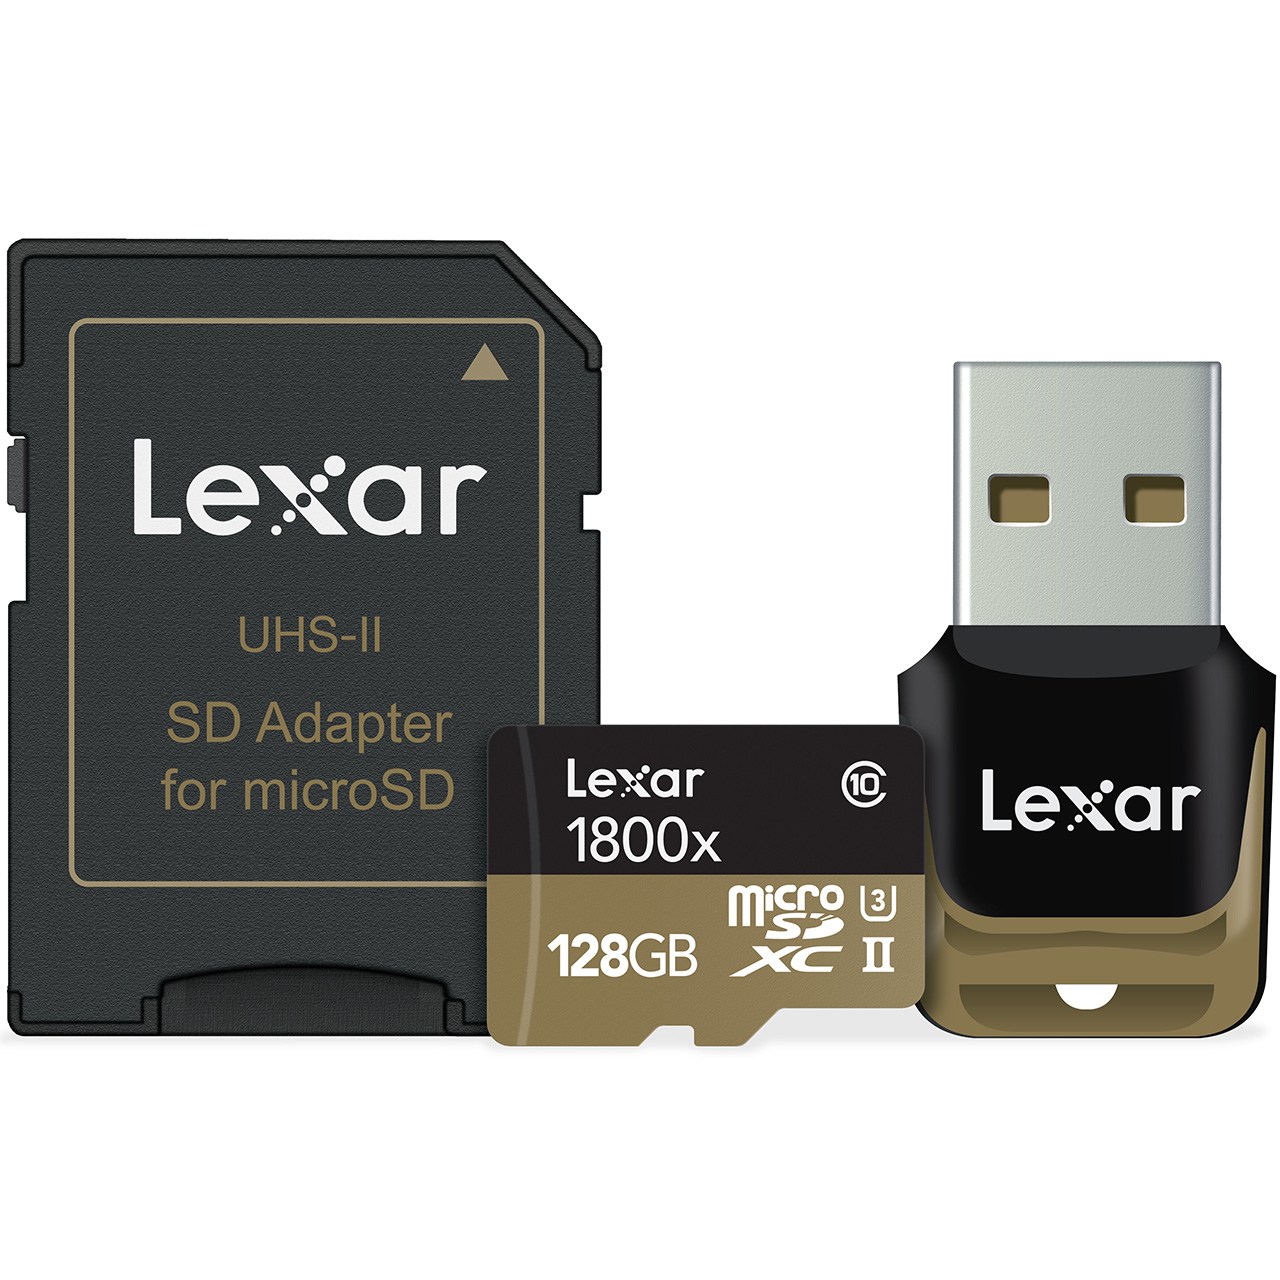 کارت حافظه microSDXC لکسار مدل Professional کلاس 10 استاندارد UHS-II U3 سرعت 1800X همراه با ریدر USB 3.0 و آداپتور - ظرفیت 128 گیگابایت